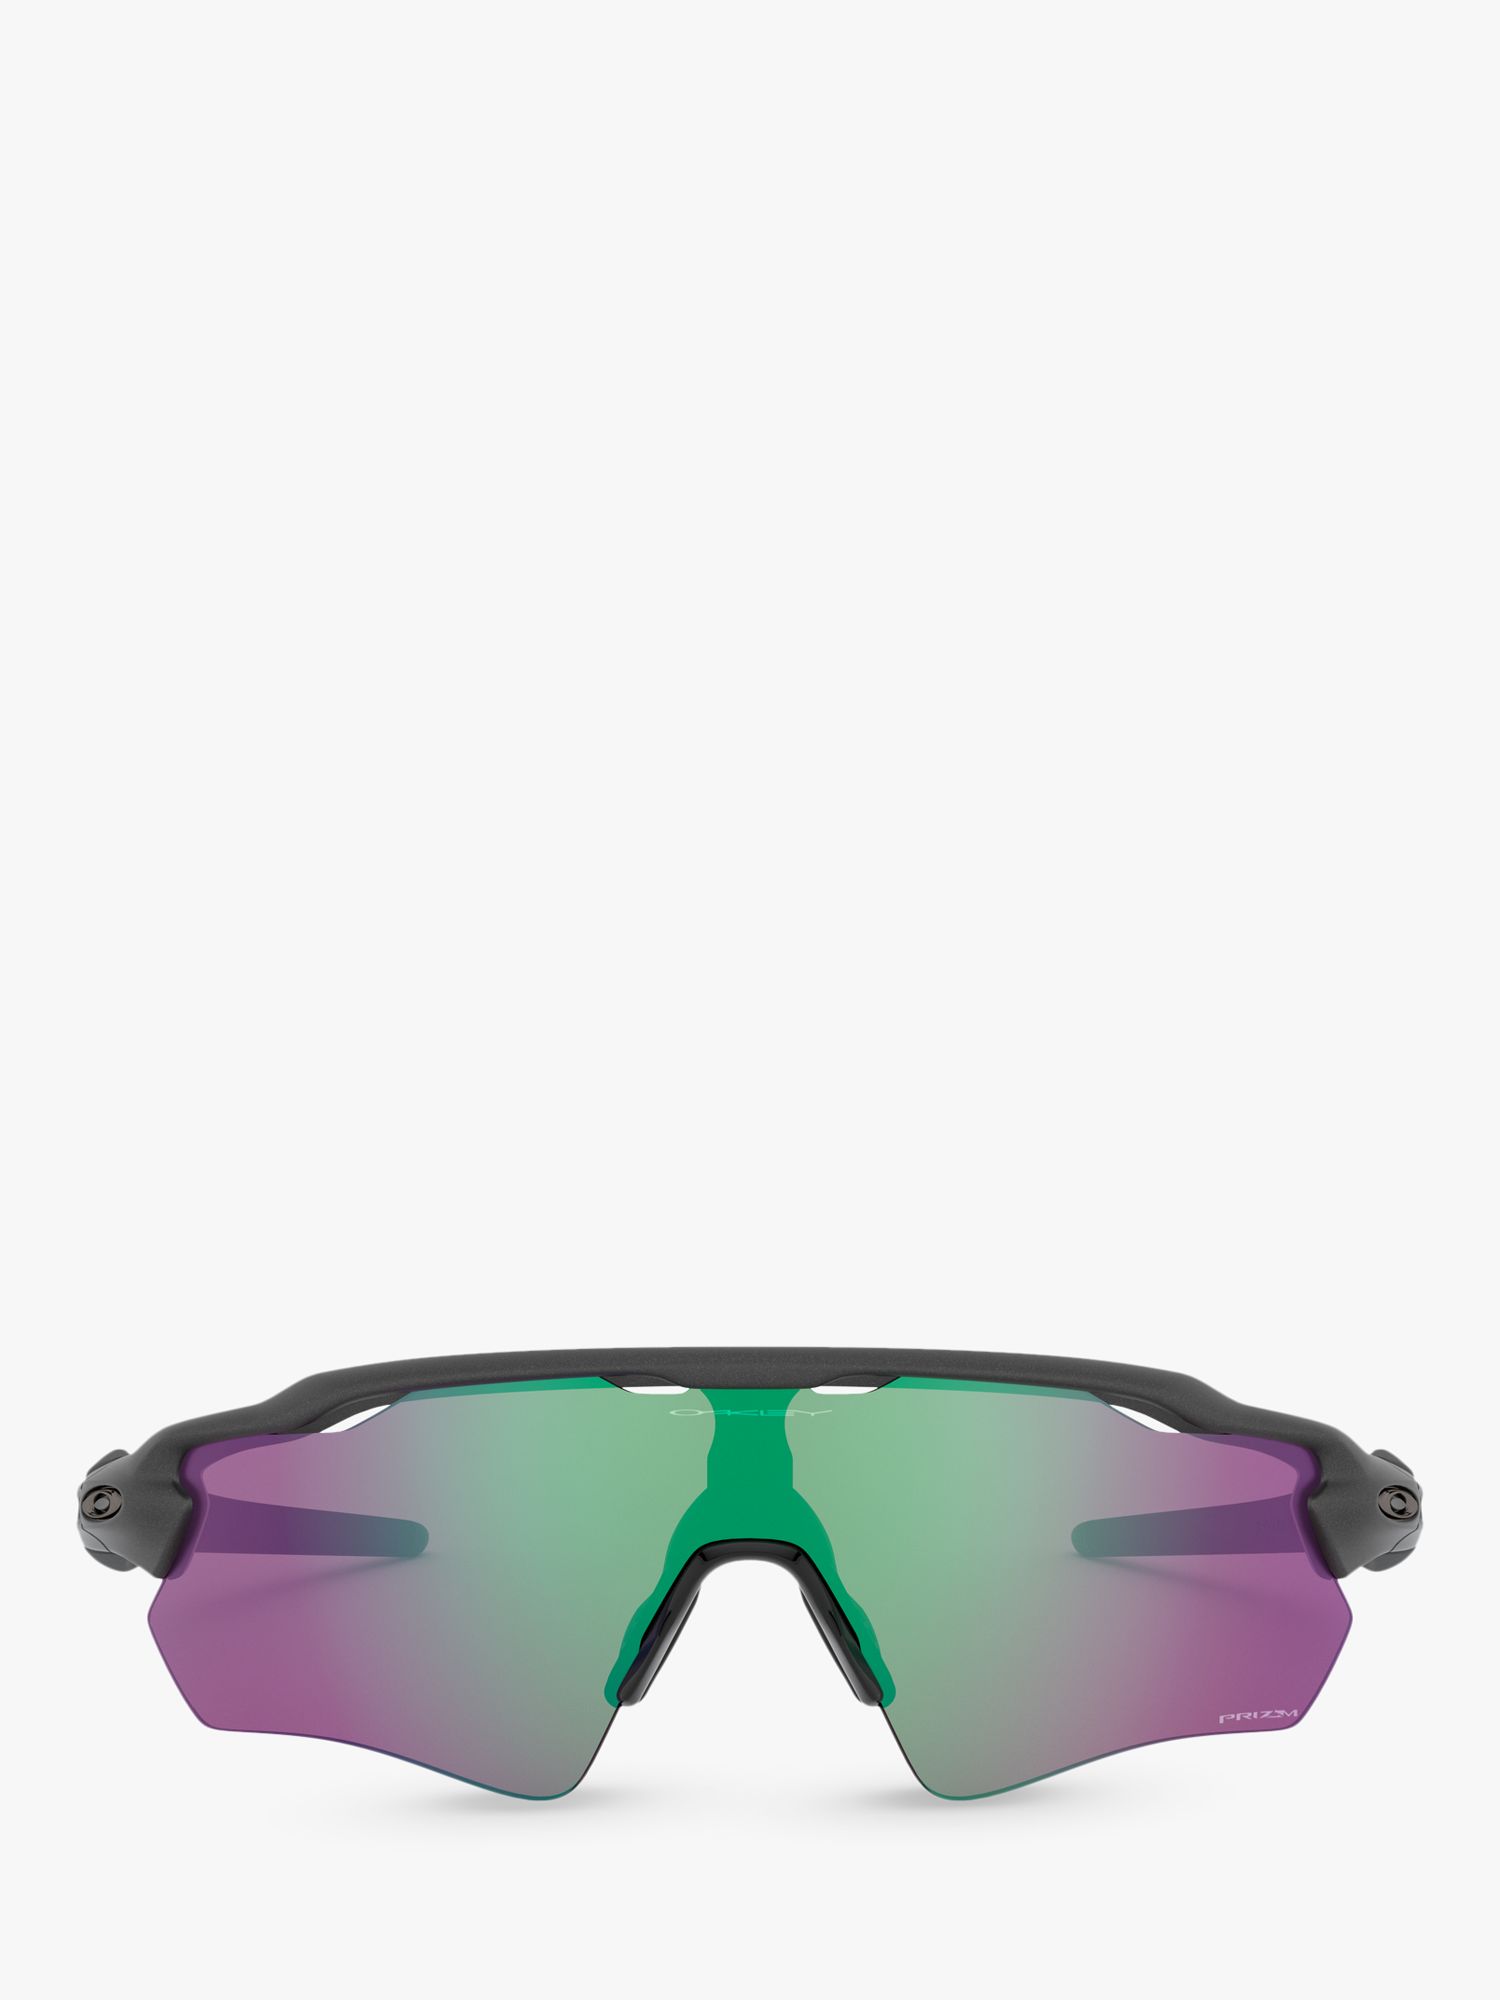 Oakley OO9208 Men's Radar EV Path Wrap Sunglasses, Steel/Mirror Green